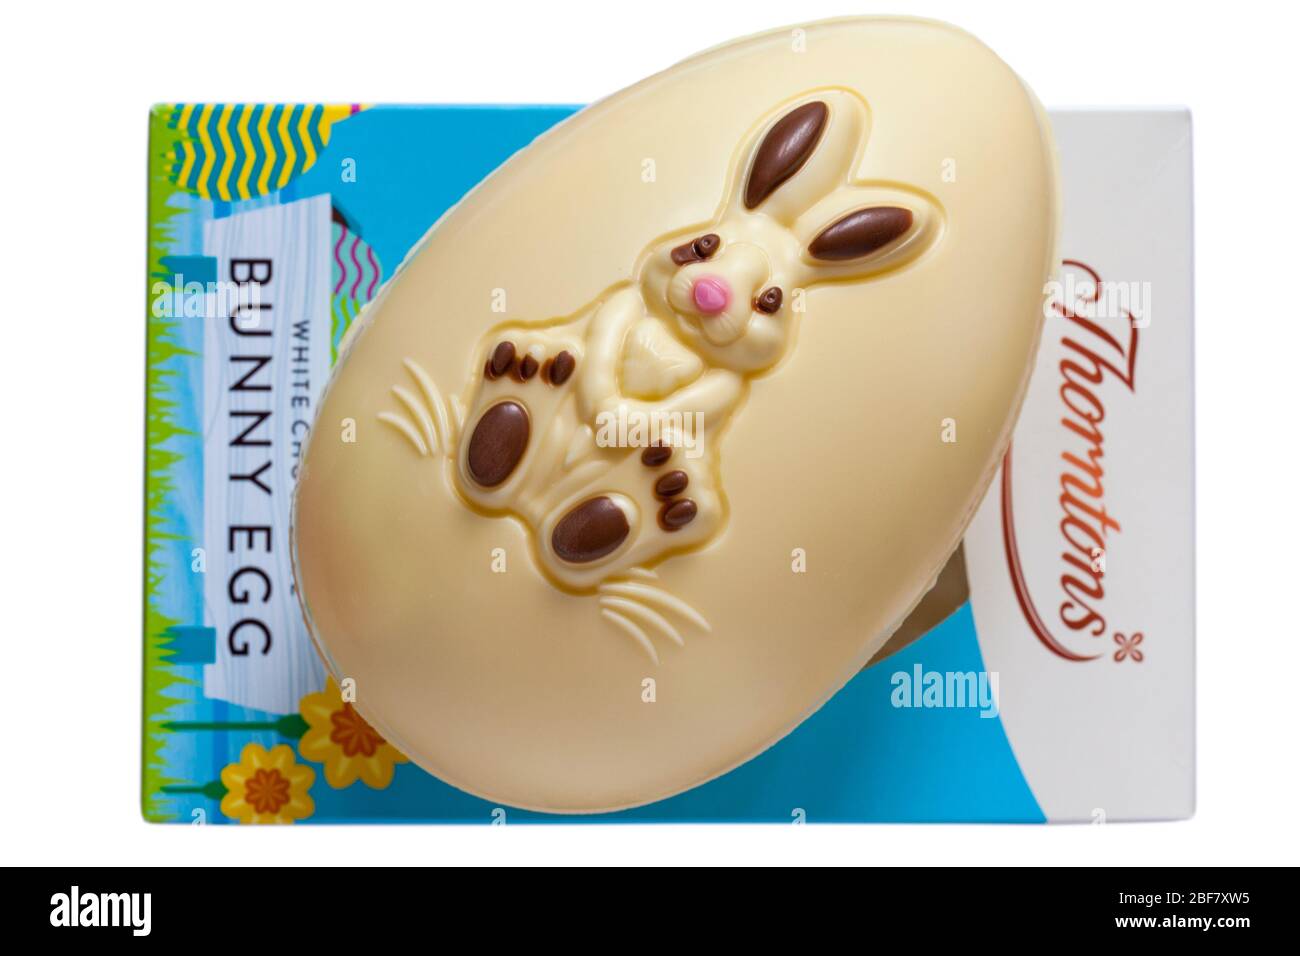 Thorntons bianco cioccolato Bunny Egg rimosso dalla scatola e posto sulla parte superiore - uovo coniglio di Pasqua isolato su sfondo bianco pronto per Pasqua Foto Stock